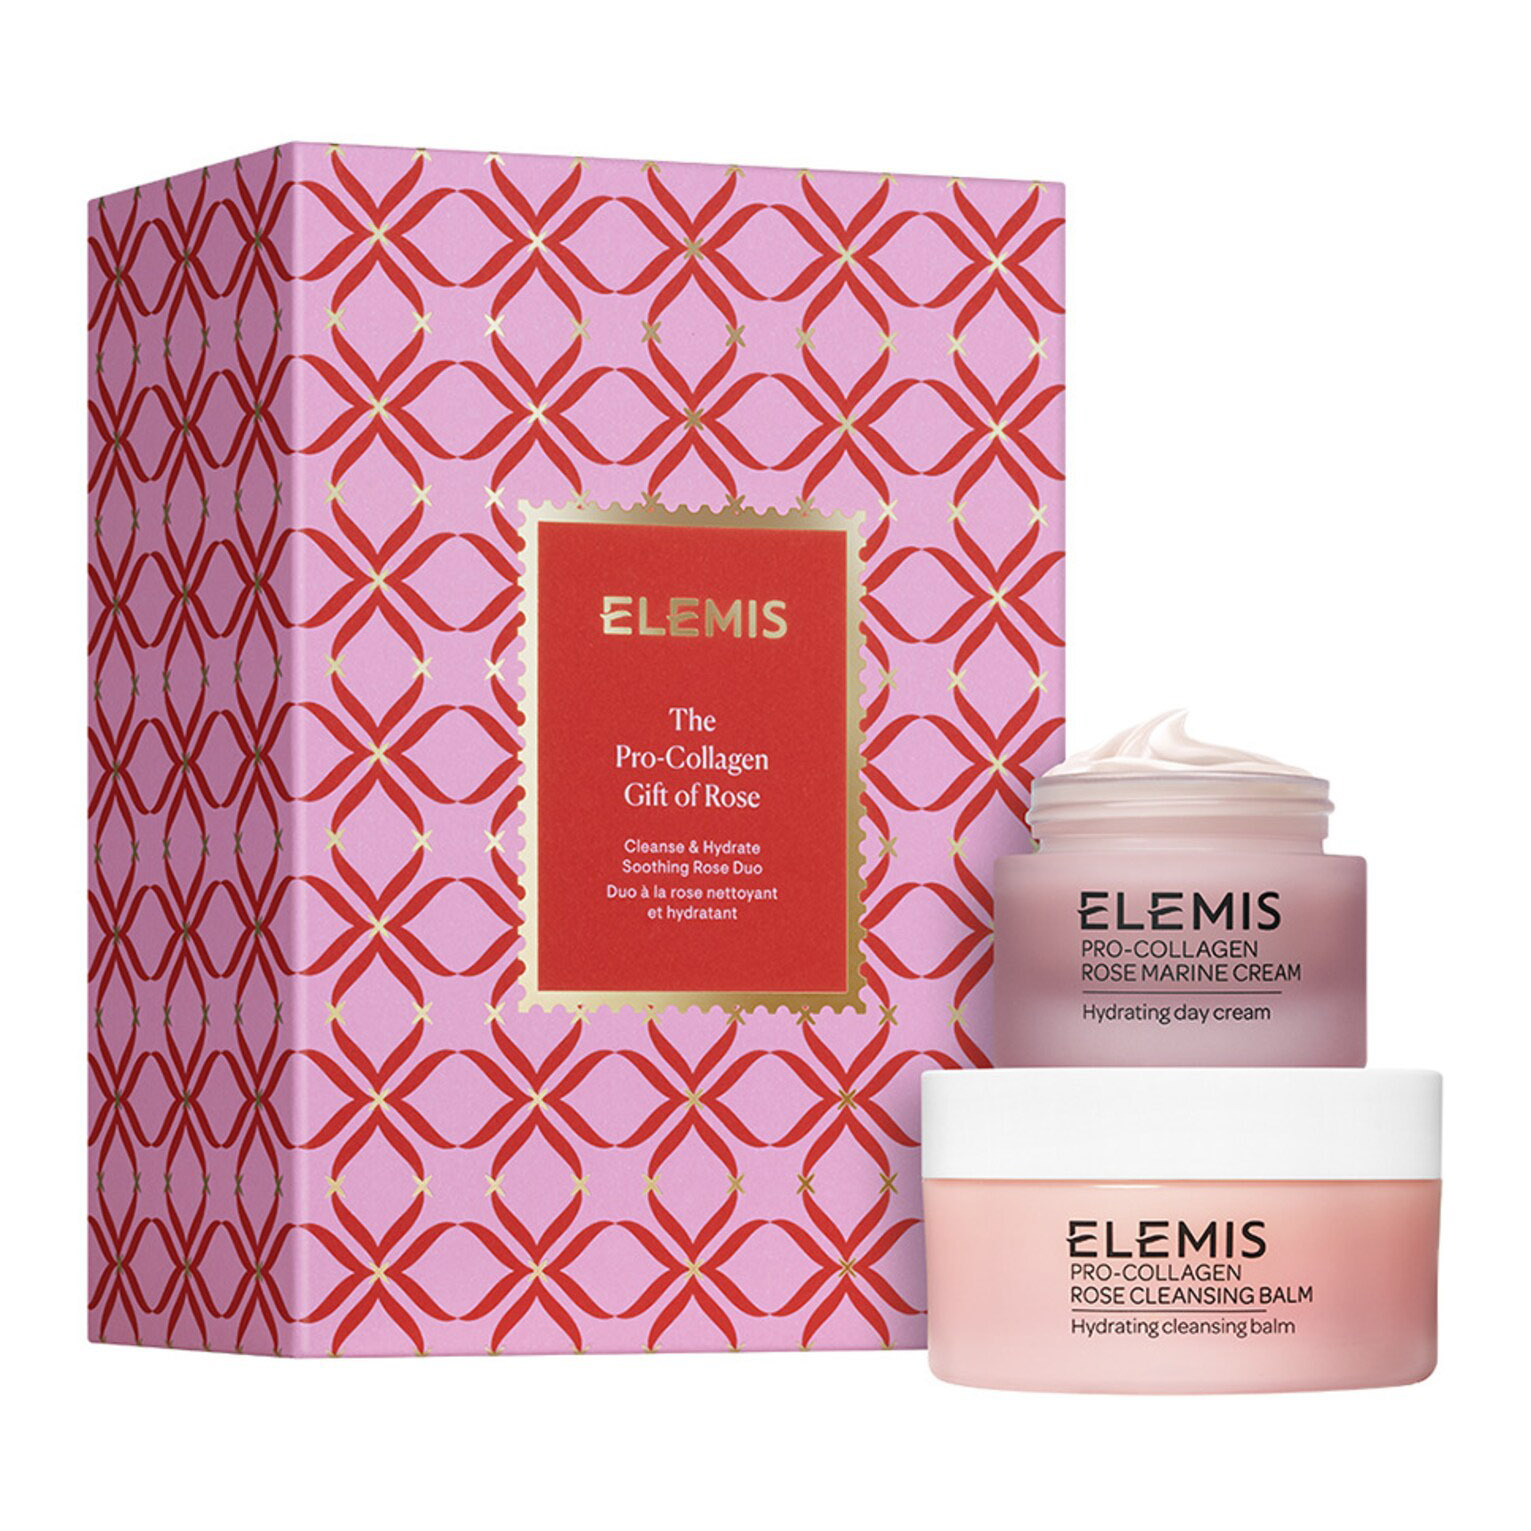 Подарочный набор Elemis The Pro-Collagen Gift Of Rose, 2 предмета подарочный набор elemis the gift of pro collagen 2 предмета